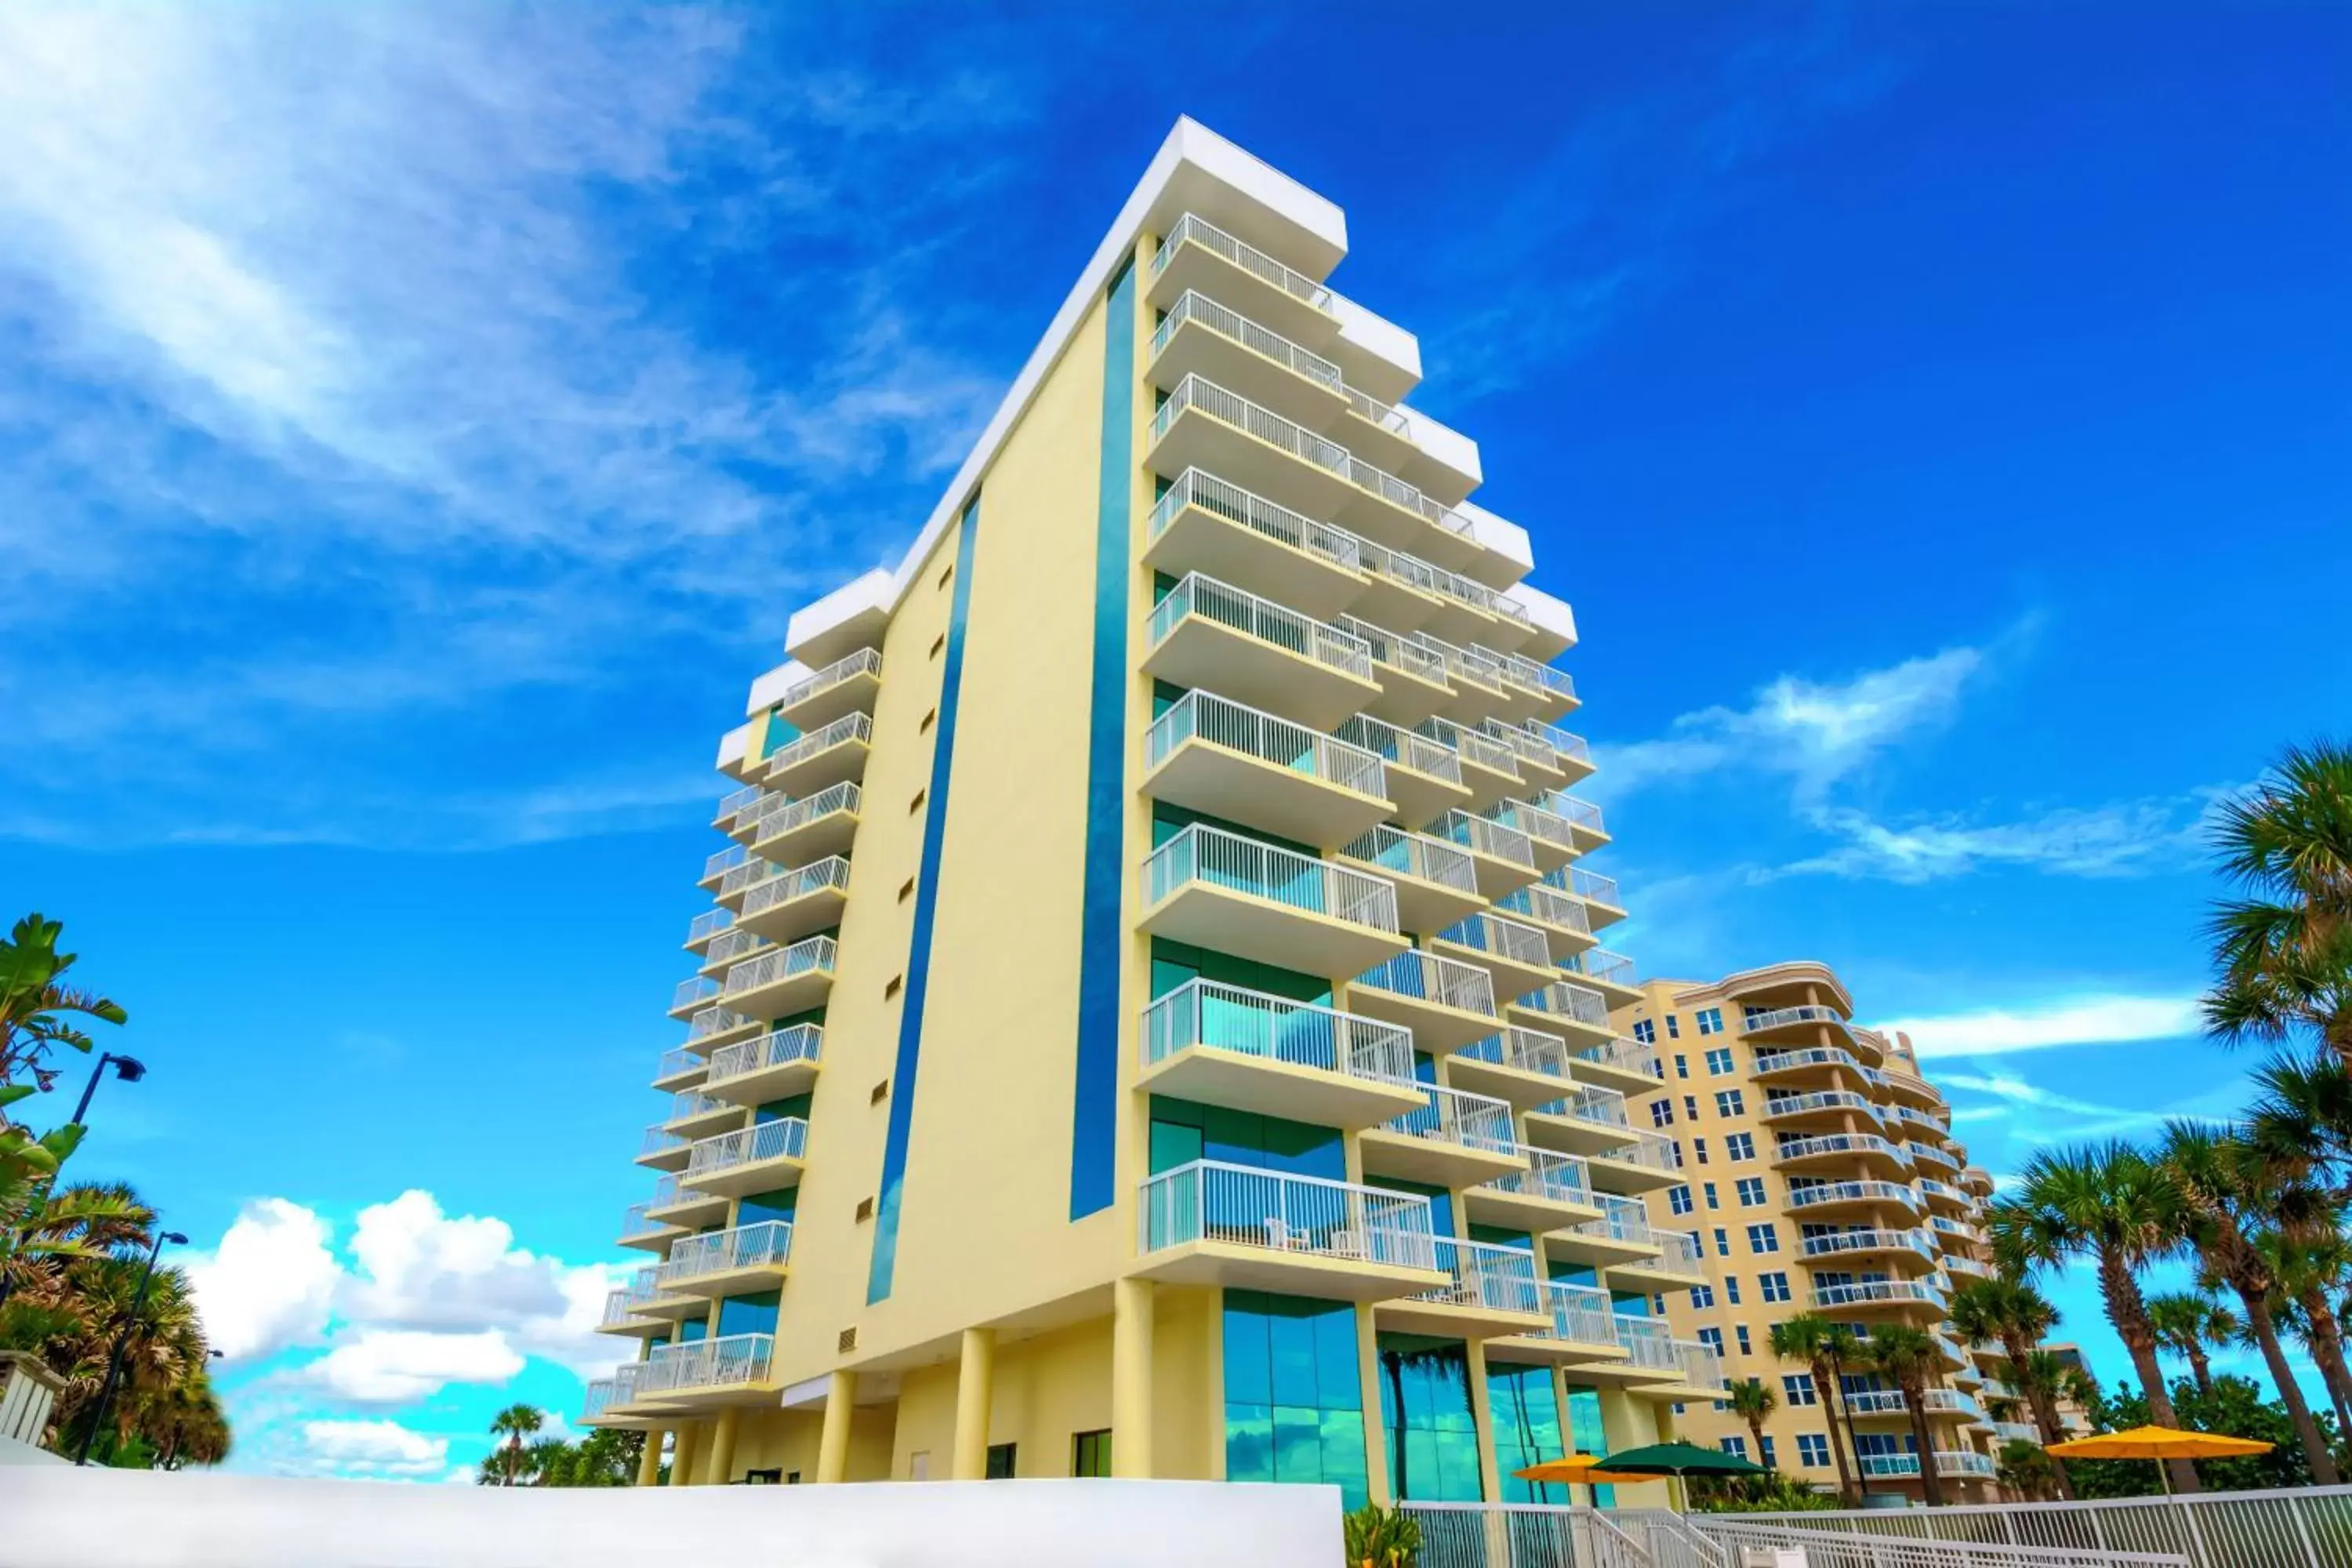 Facade/entrance, Property Building in Bahama House - Daytona Beach Shores